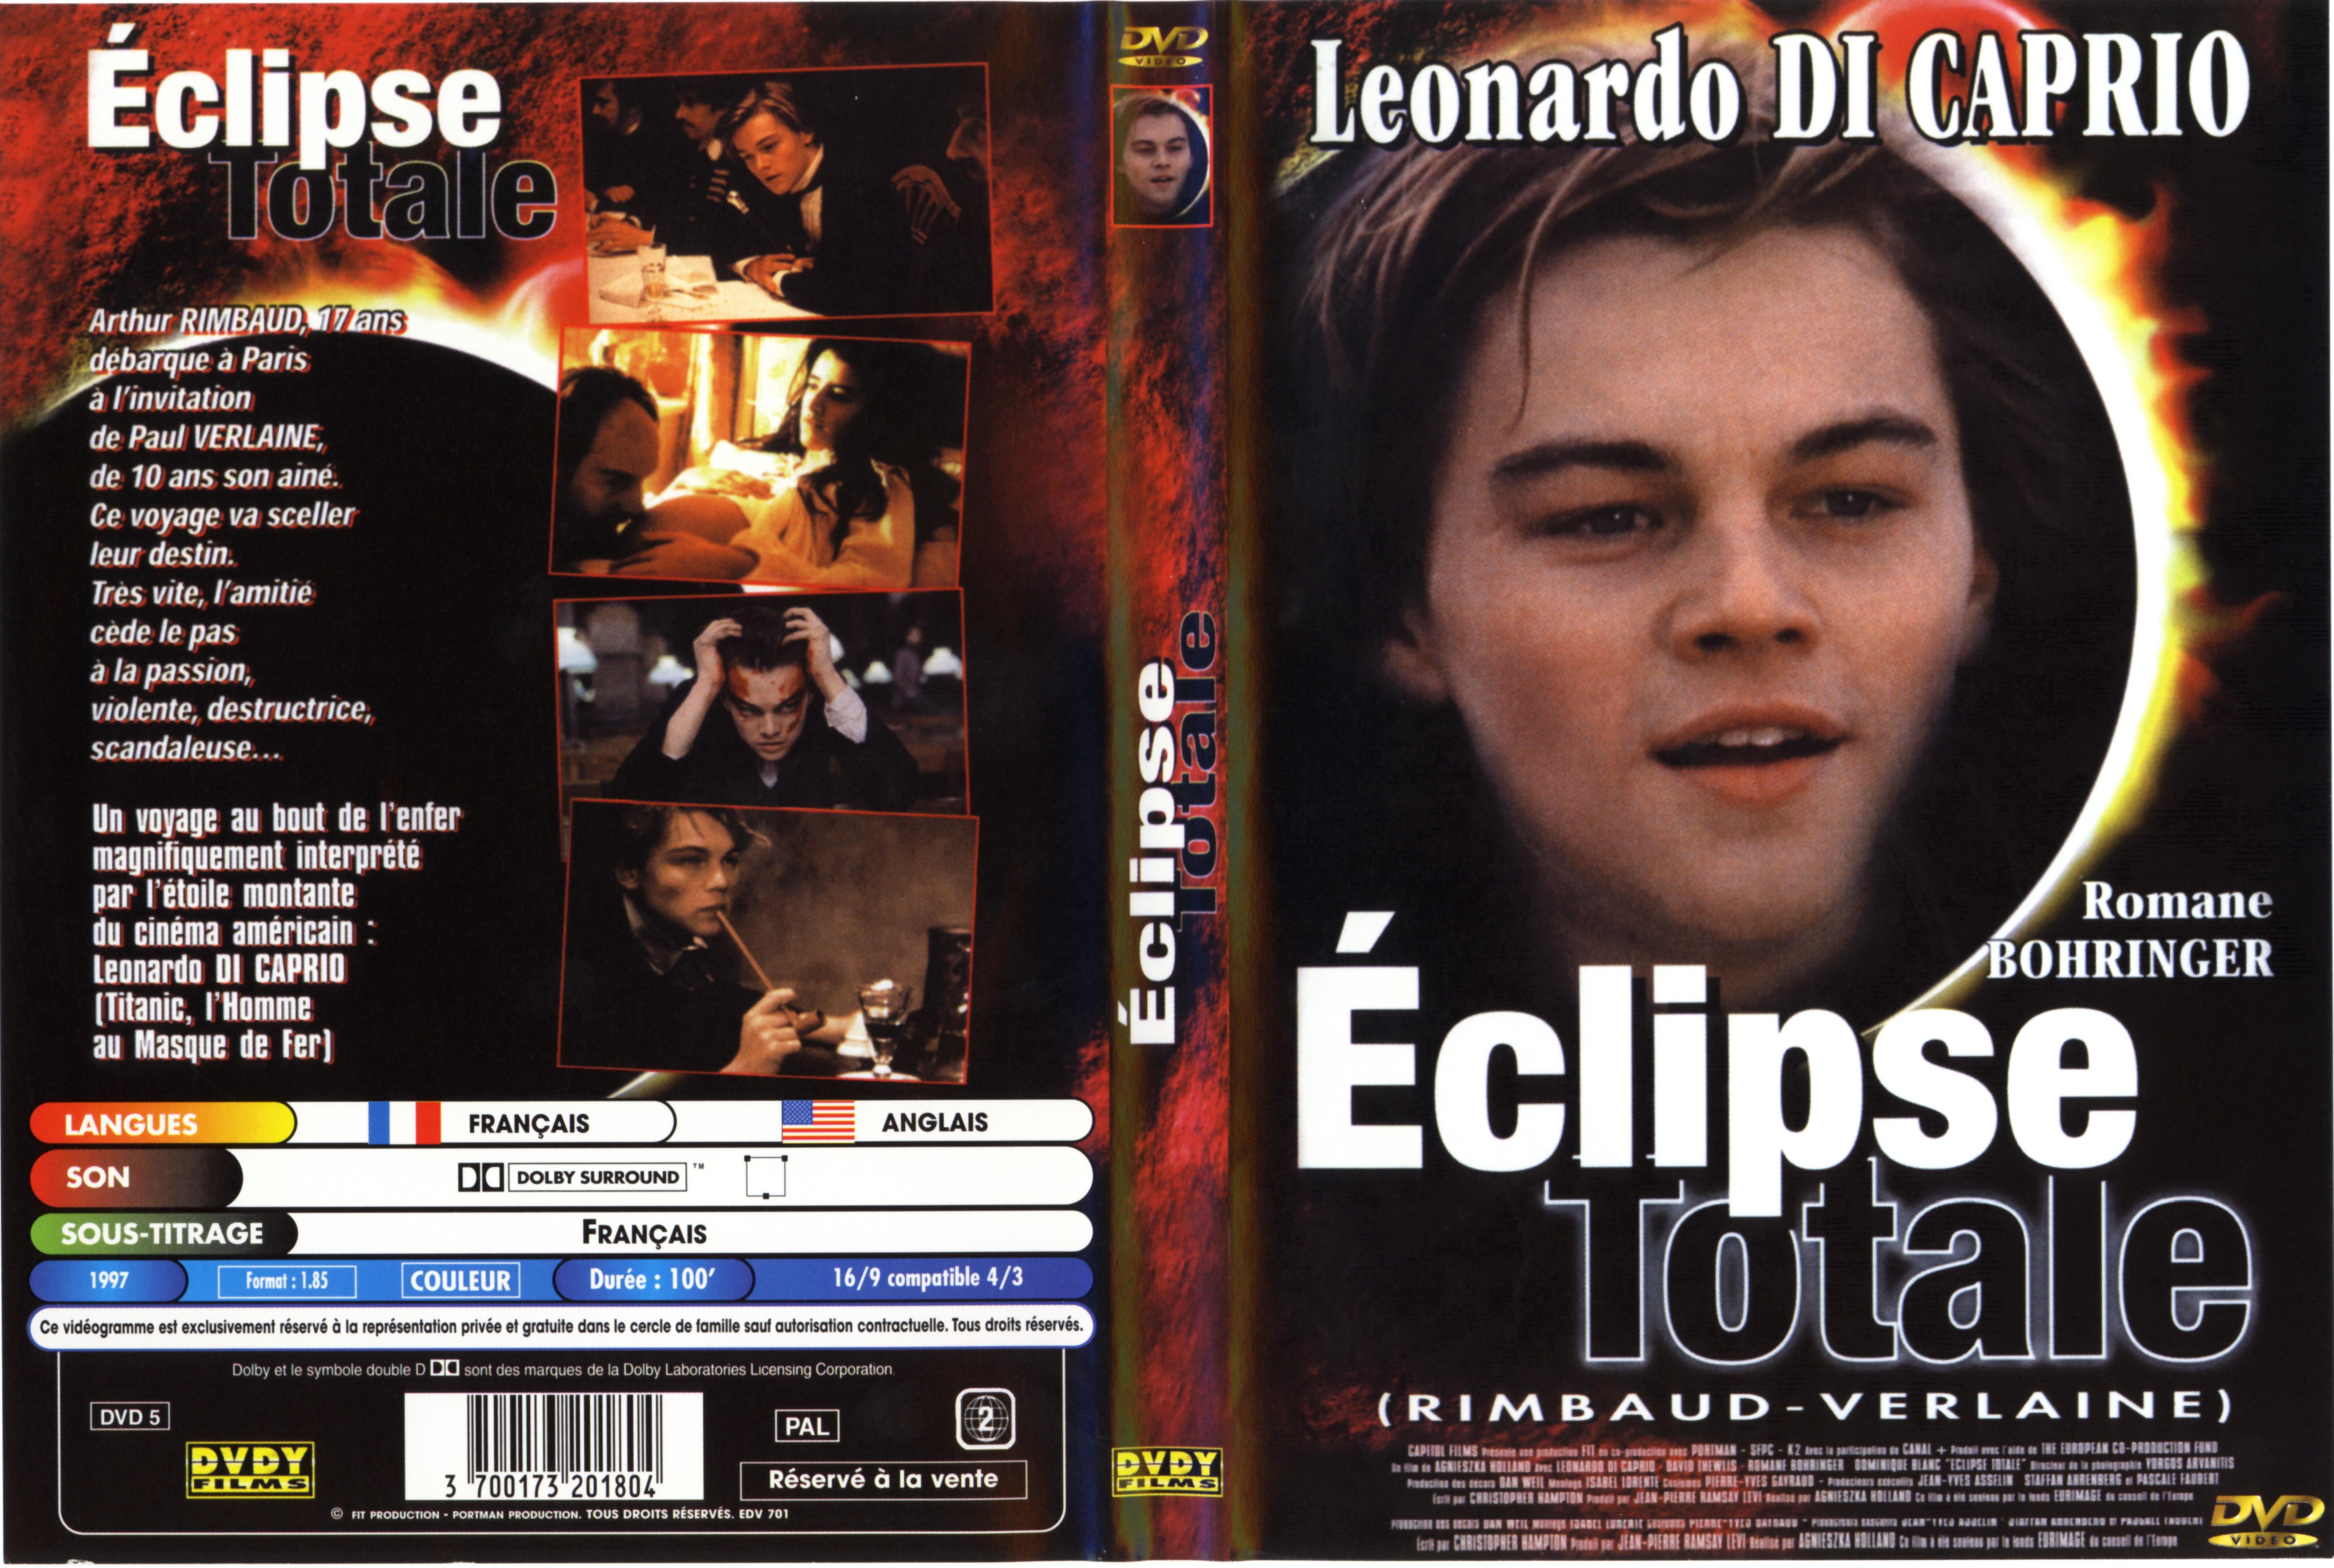 Jaquette DVD de Eclipse totale Cinéma Passion